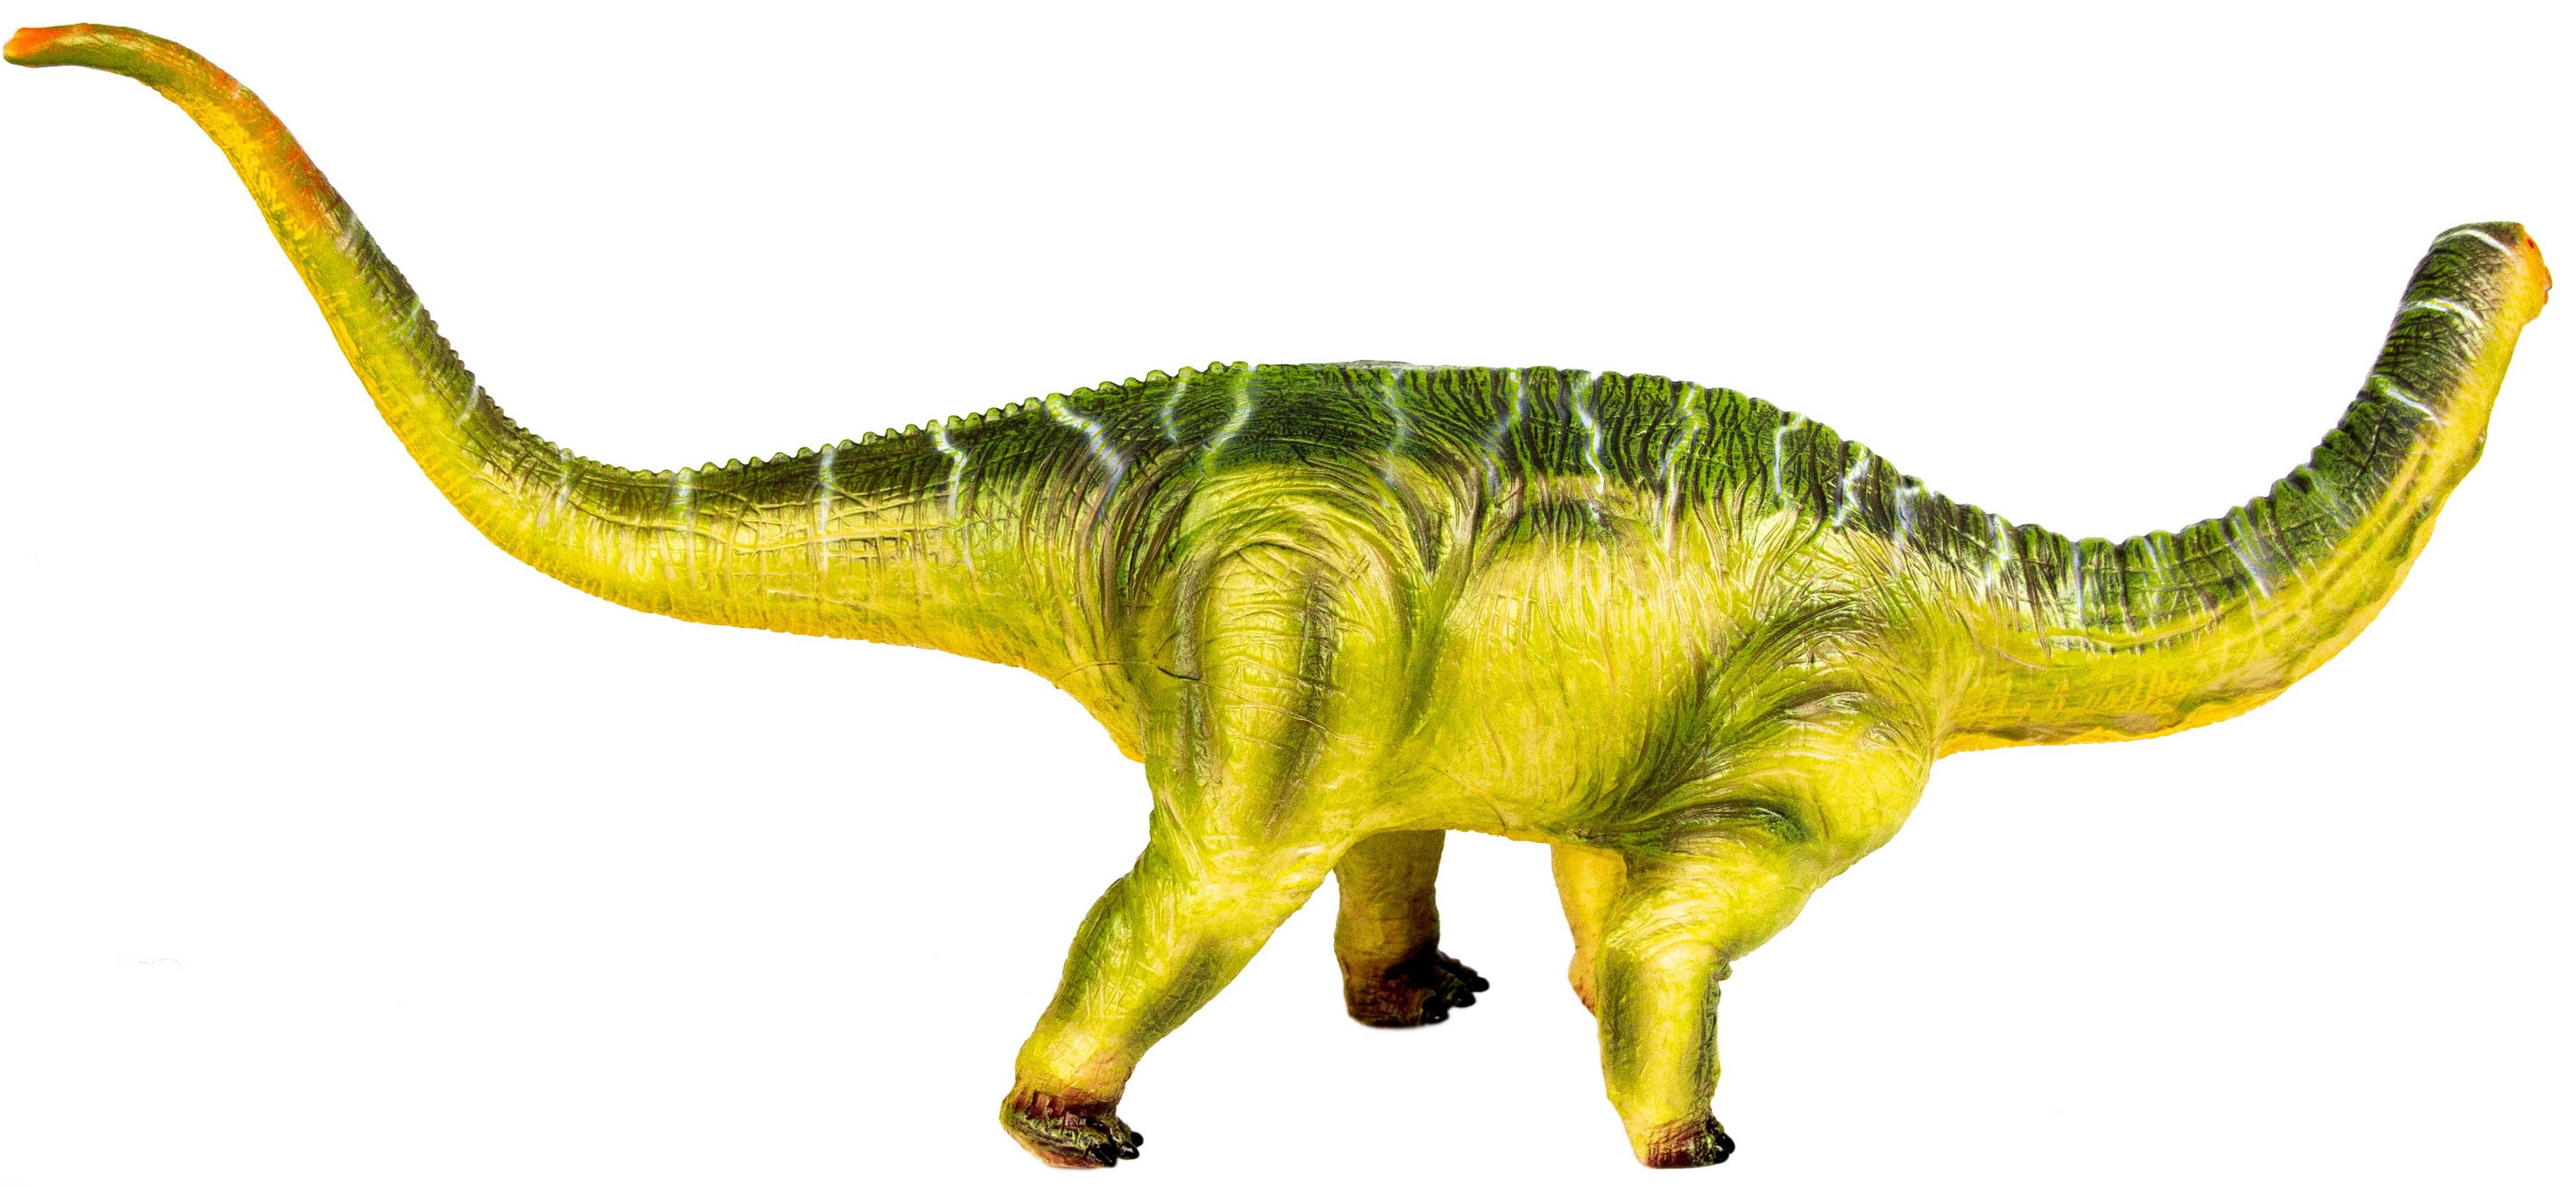 Фигурка динозавра «Брахиозавр» 55 см., Q9899-513A, из термопластичной резины, со звуковыми эффектами / Микс